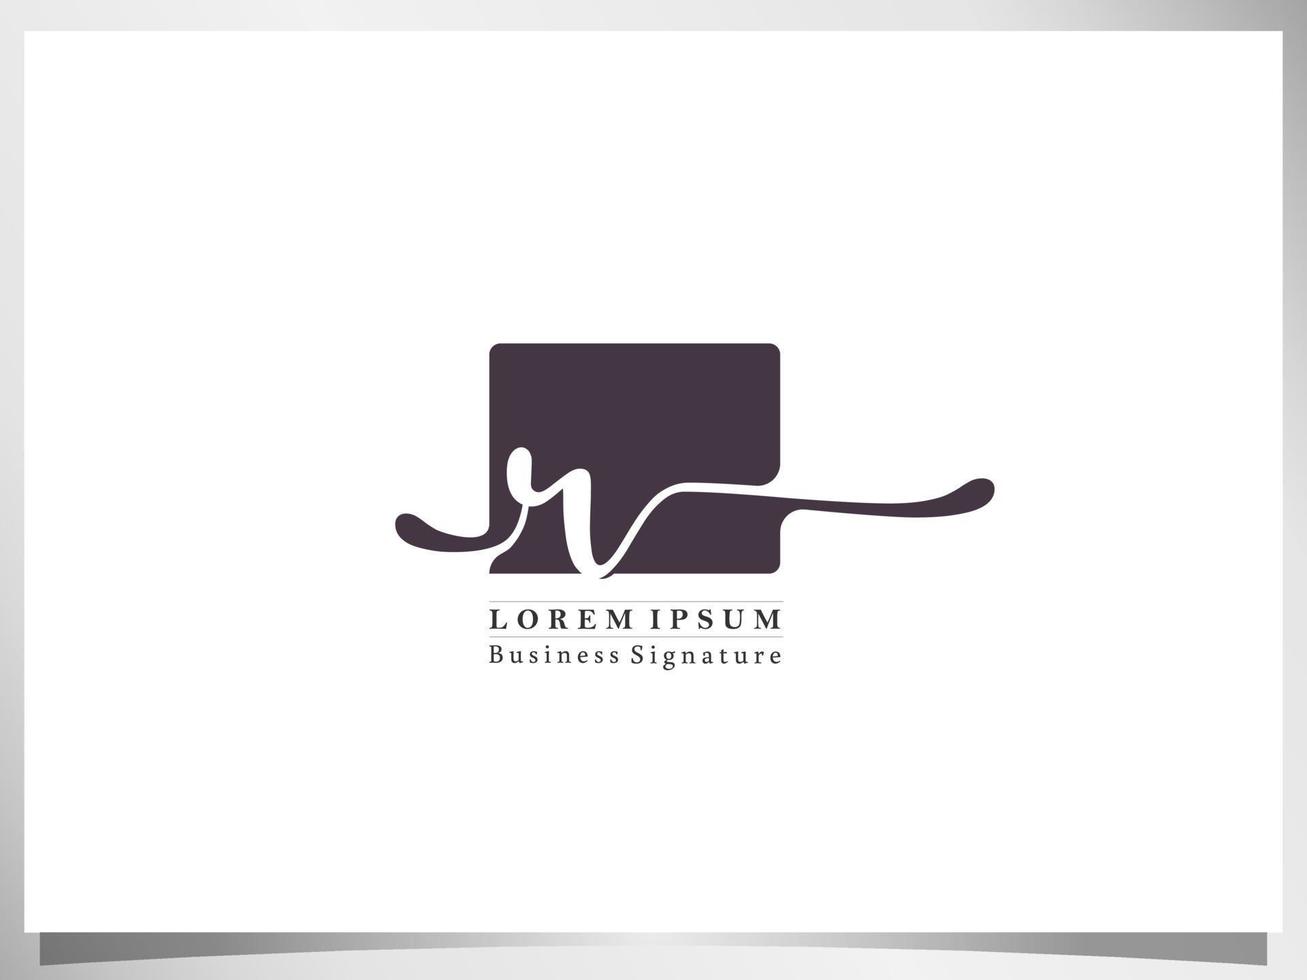 logo-ontwerppictogram voor zakelijke handtekening, eerste letter t geïsoleerd vierkant op witte achtergrond vector